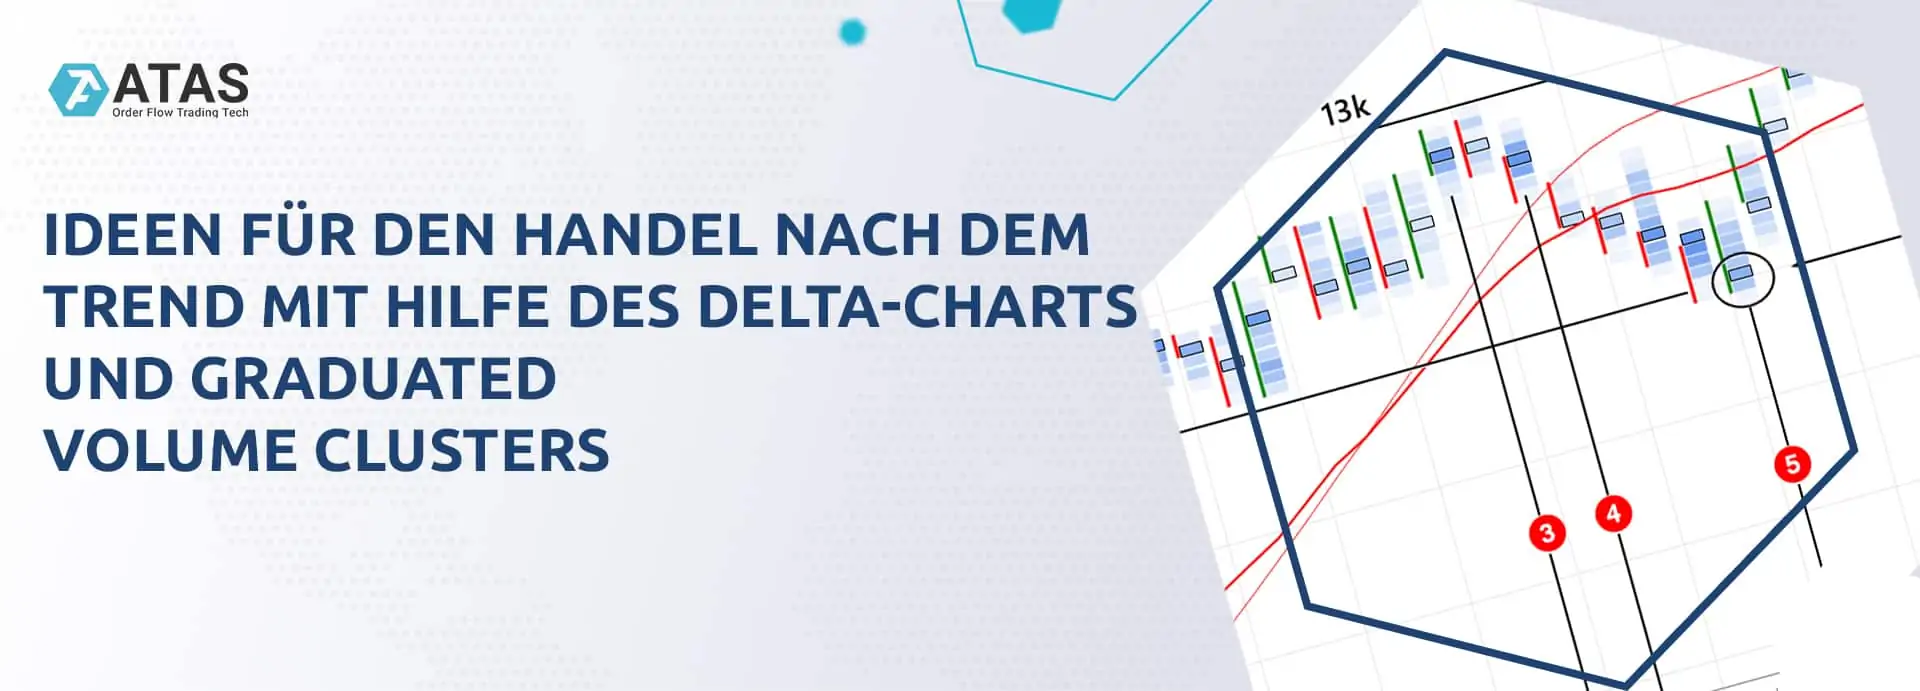 Ideen für den Handel nach dem Trend mit Hilfe des Delta-Charts und Graduated Volume Clusters